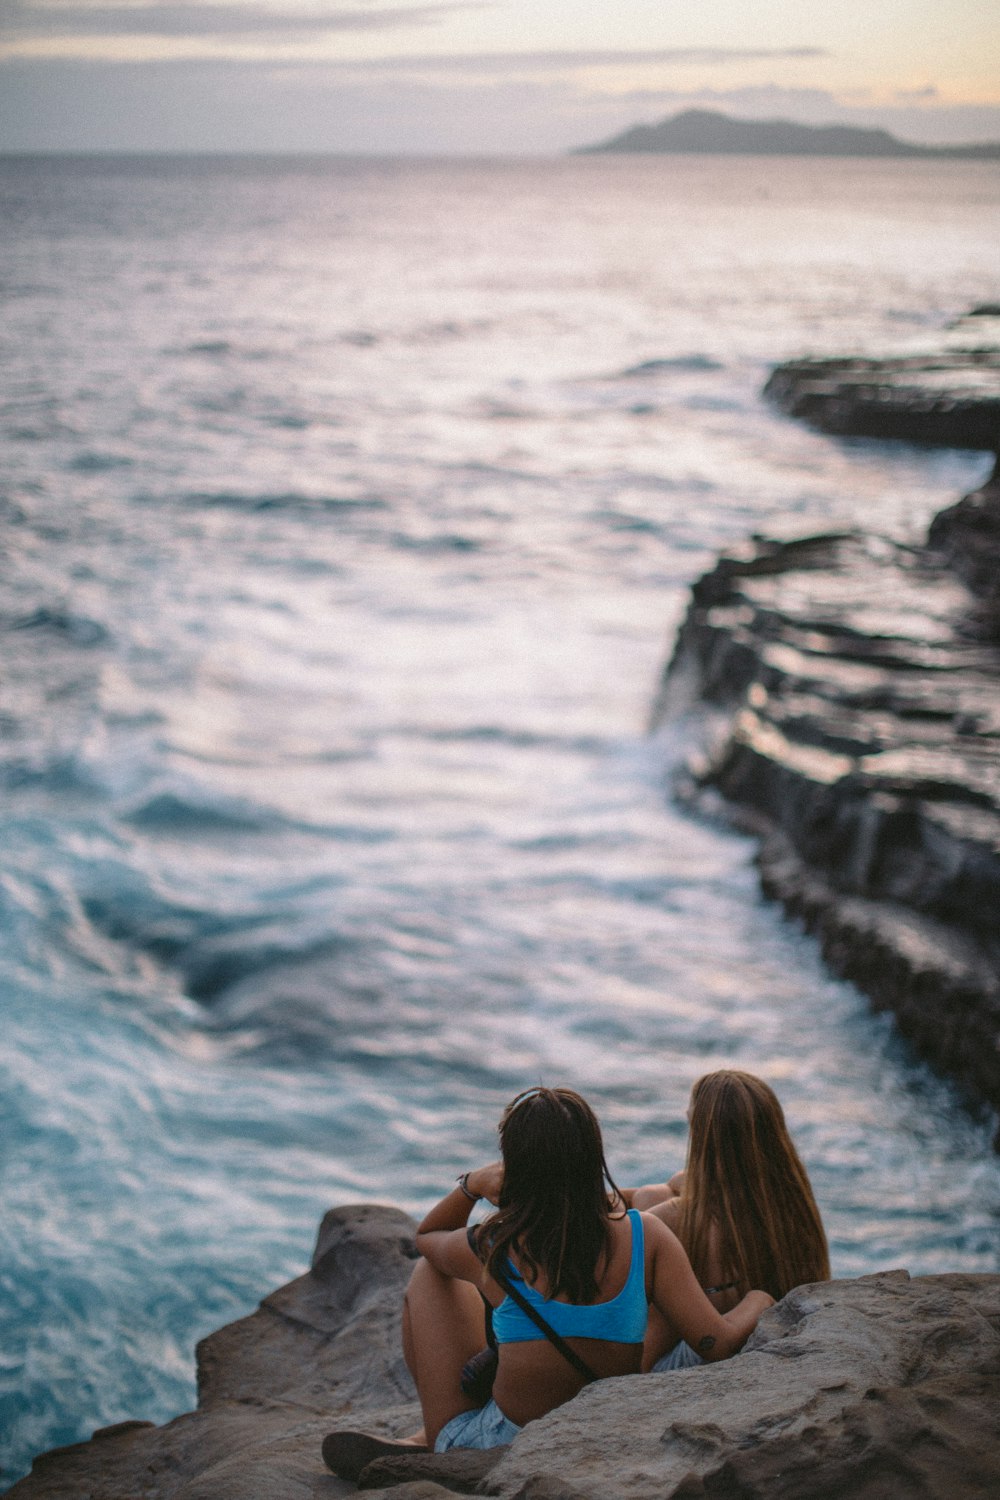 two woman sitting on rocks near body of water